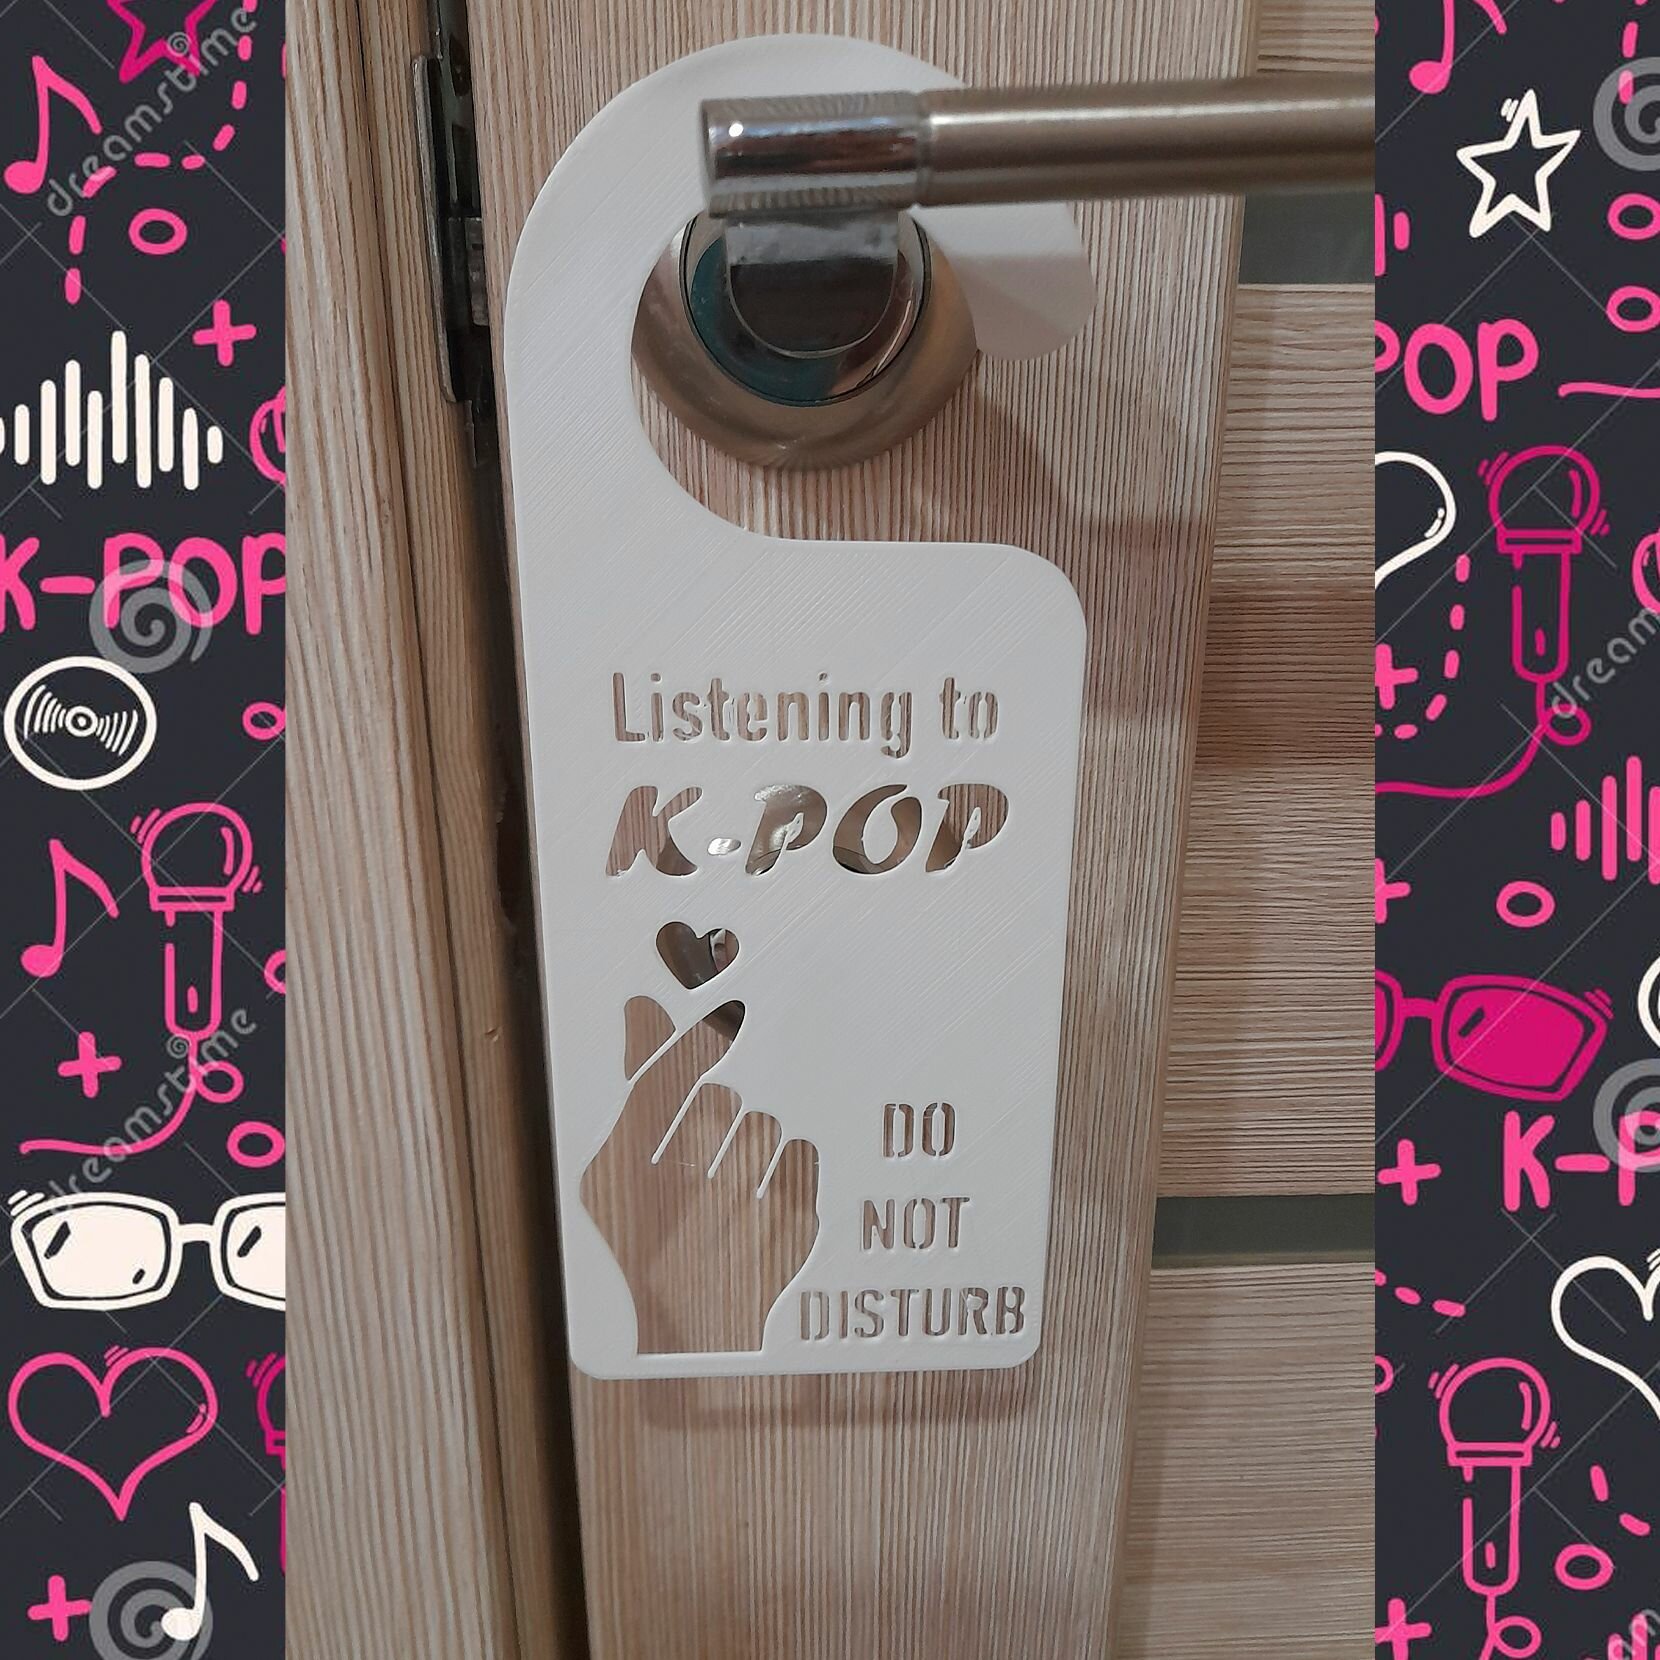 KPOP Табличка на дверь: Не беспокоить слушаю K-POP